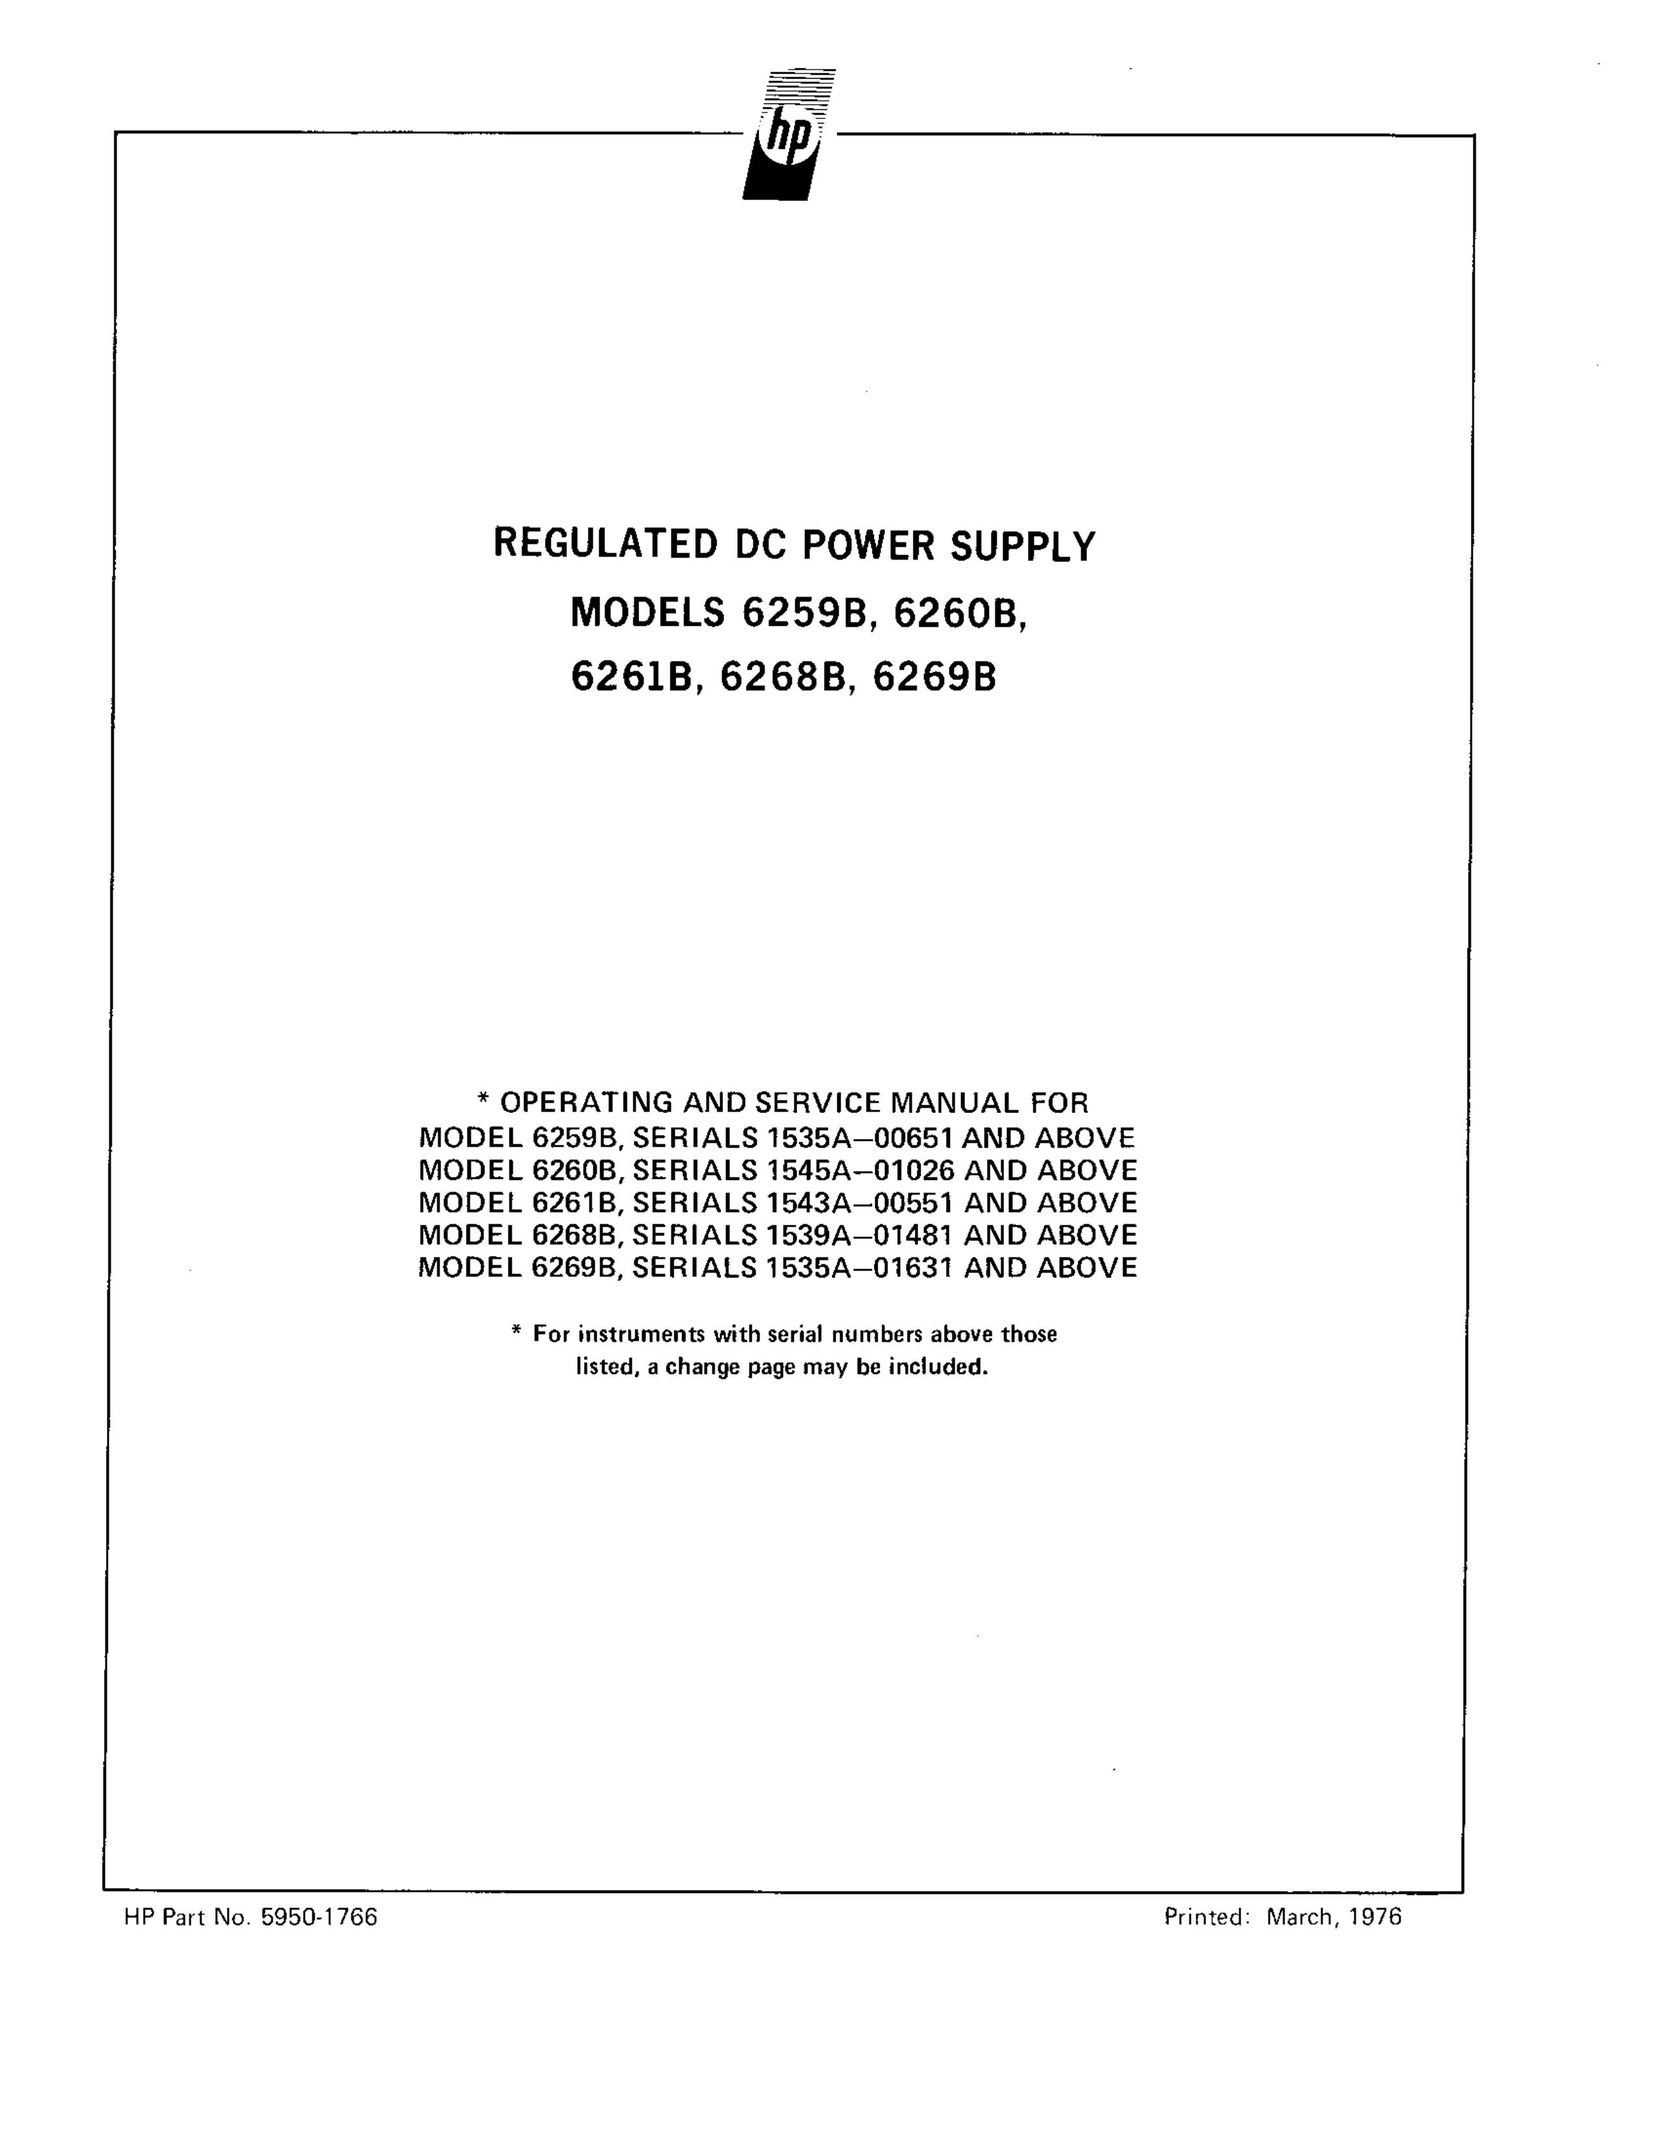 HP (Hewlett-Packard) 6269B Power Supply User Manual